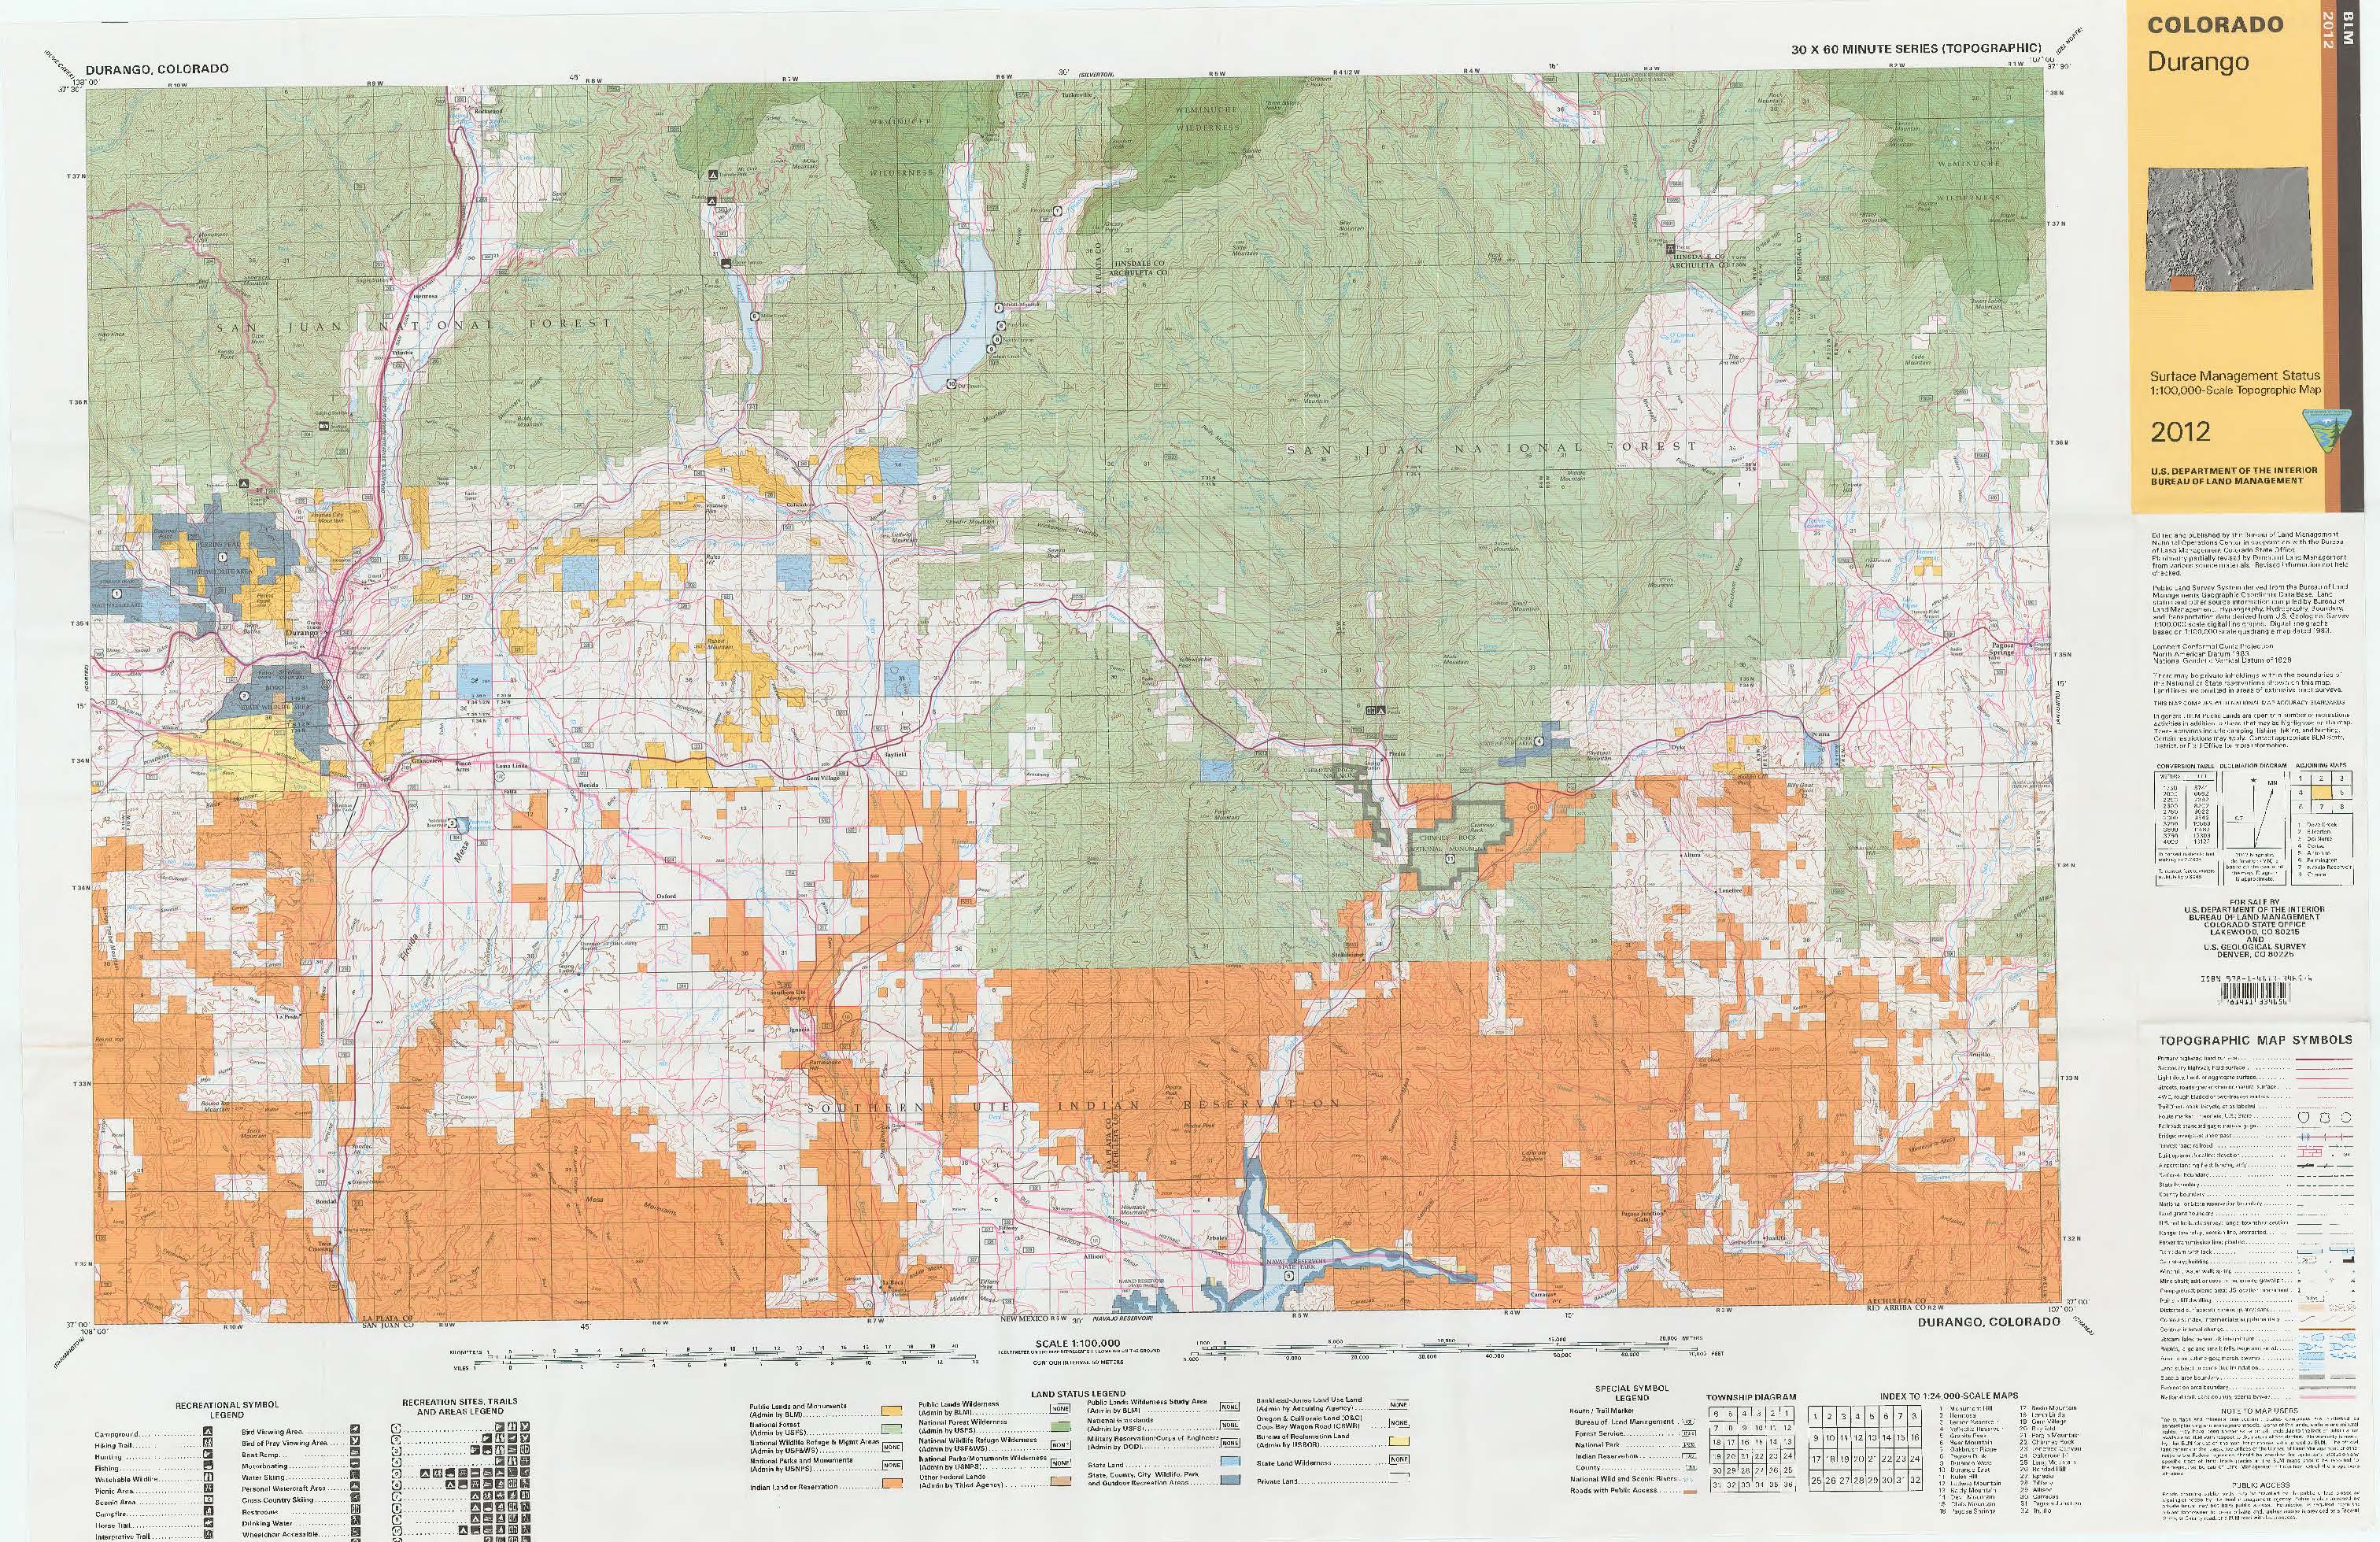 Co Surface Management Status Durango Map Bureau Of Land Management